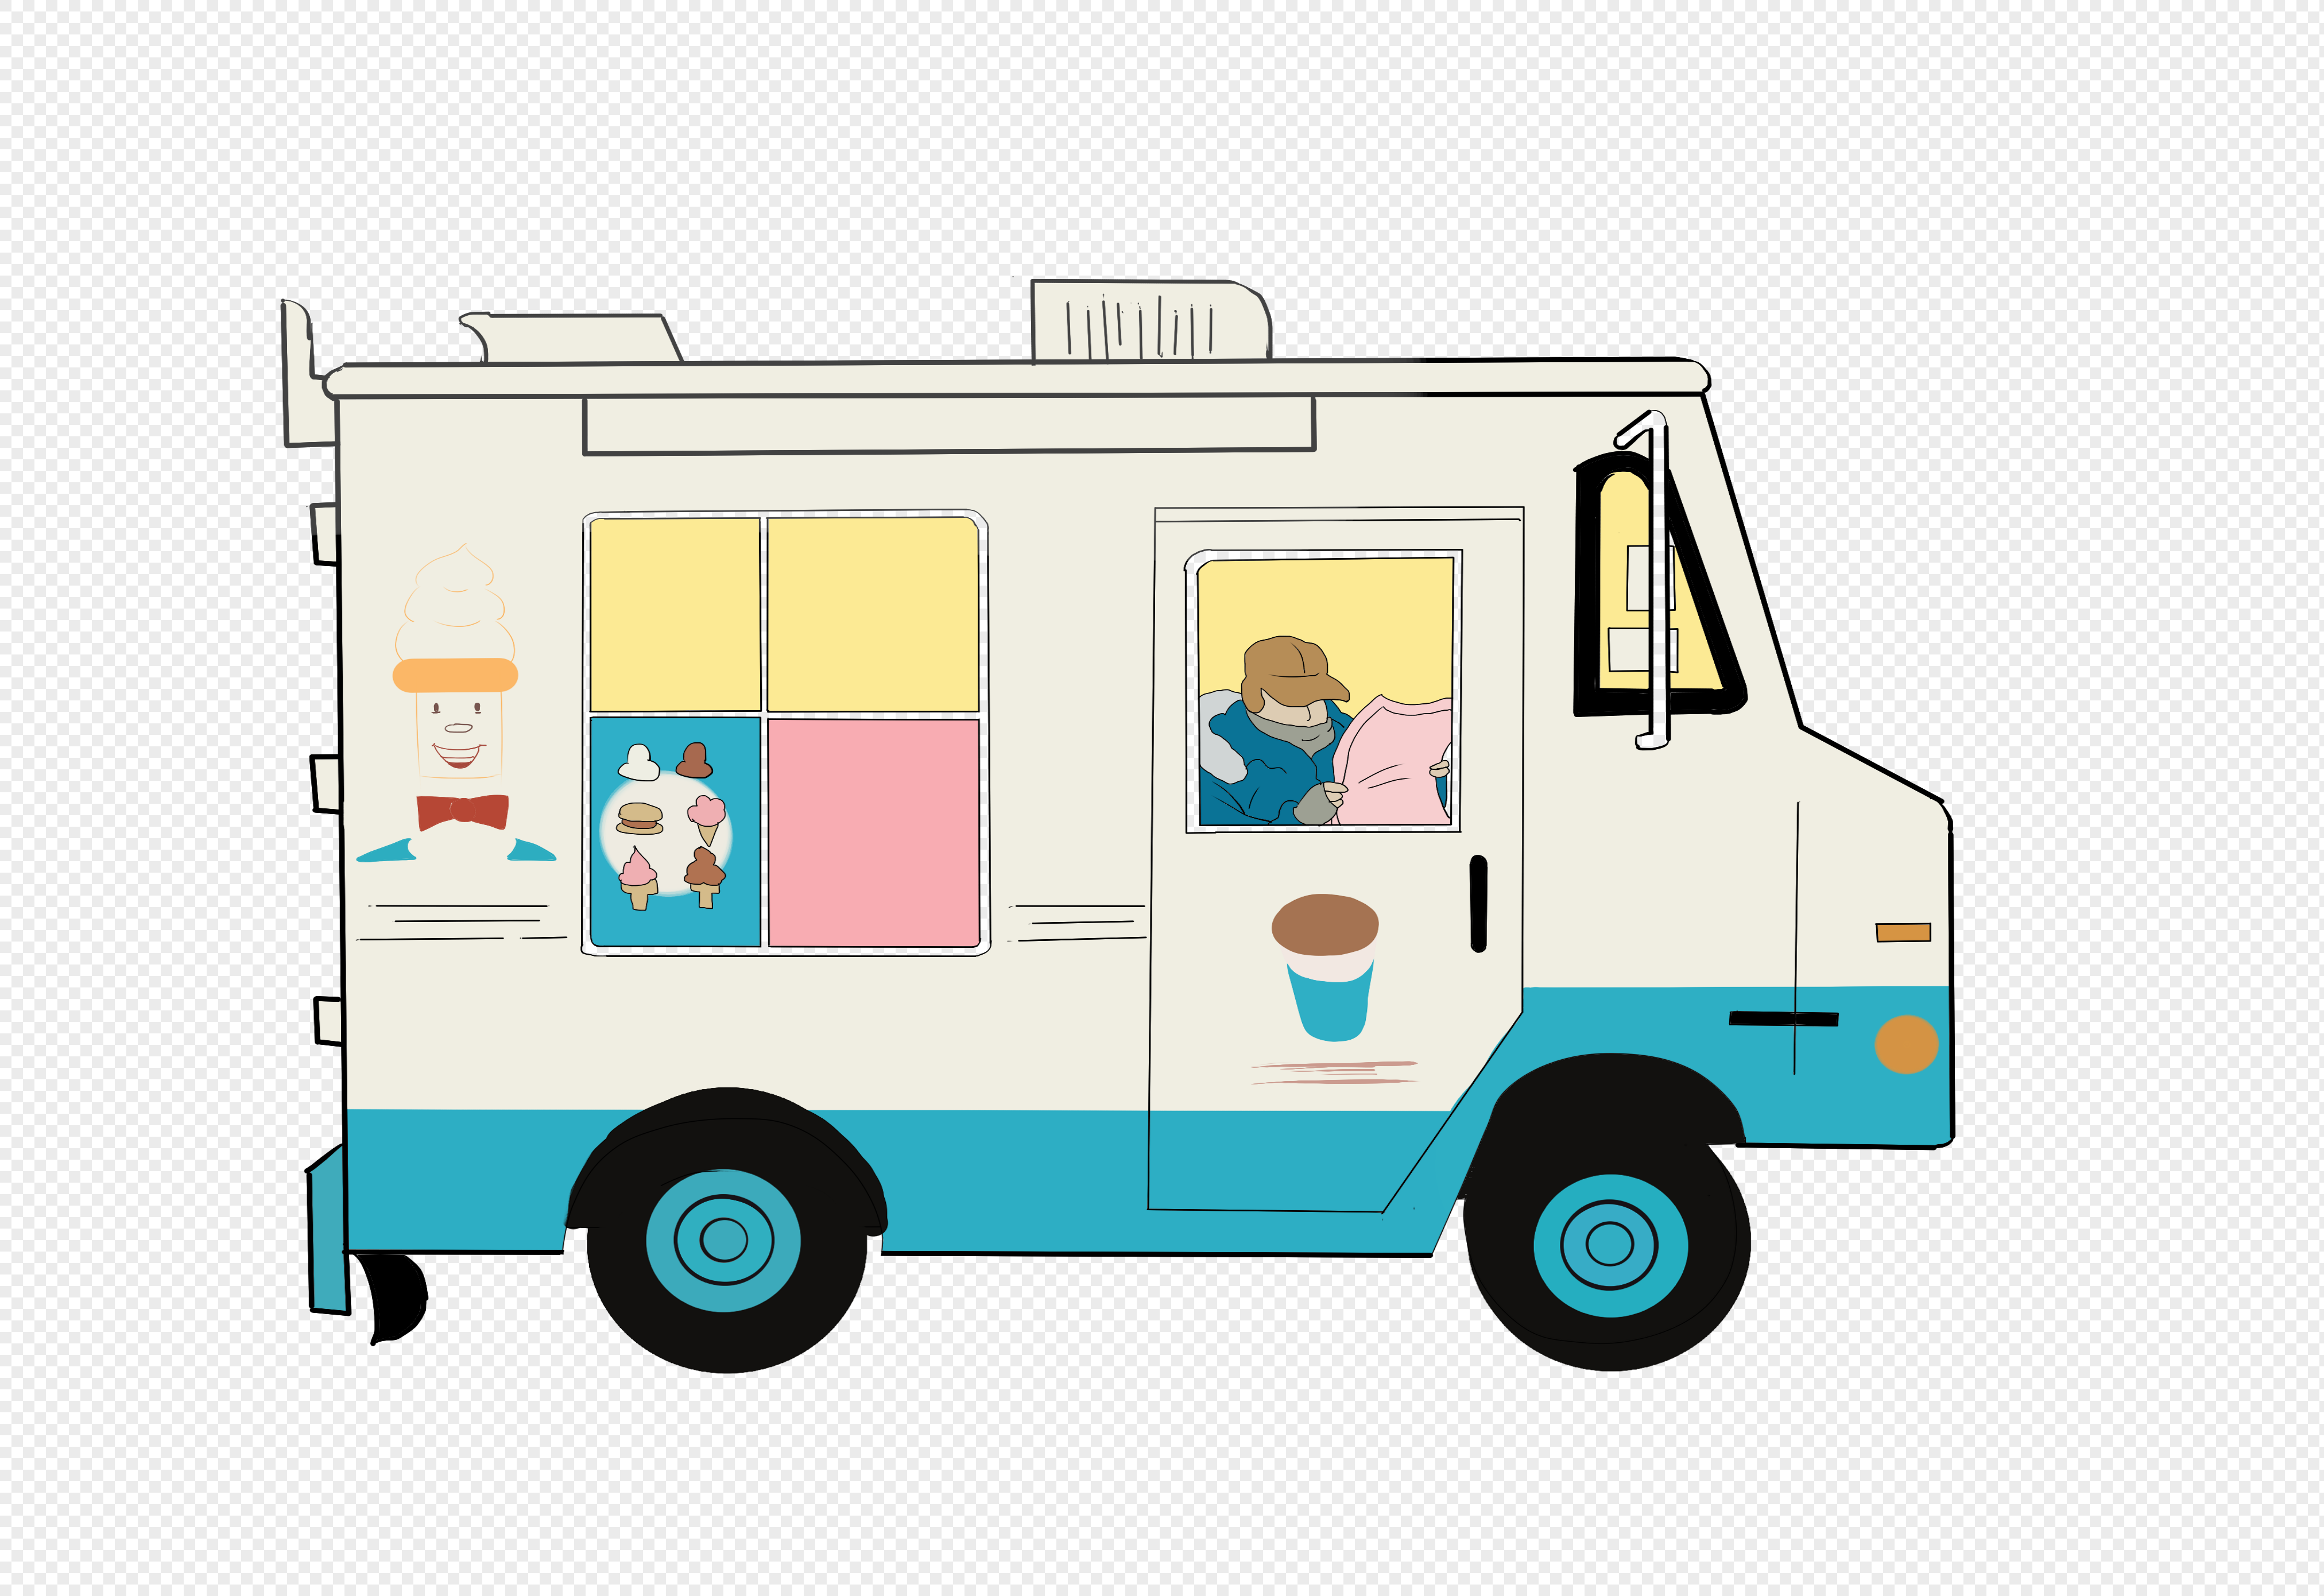 Camion de helados